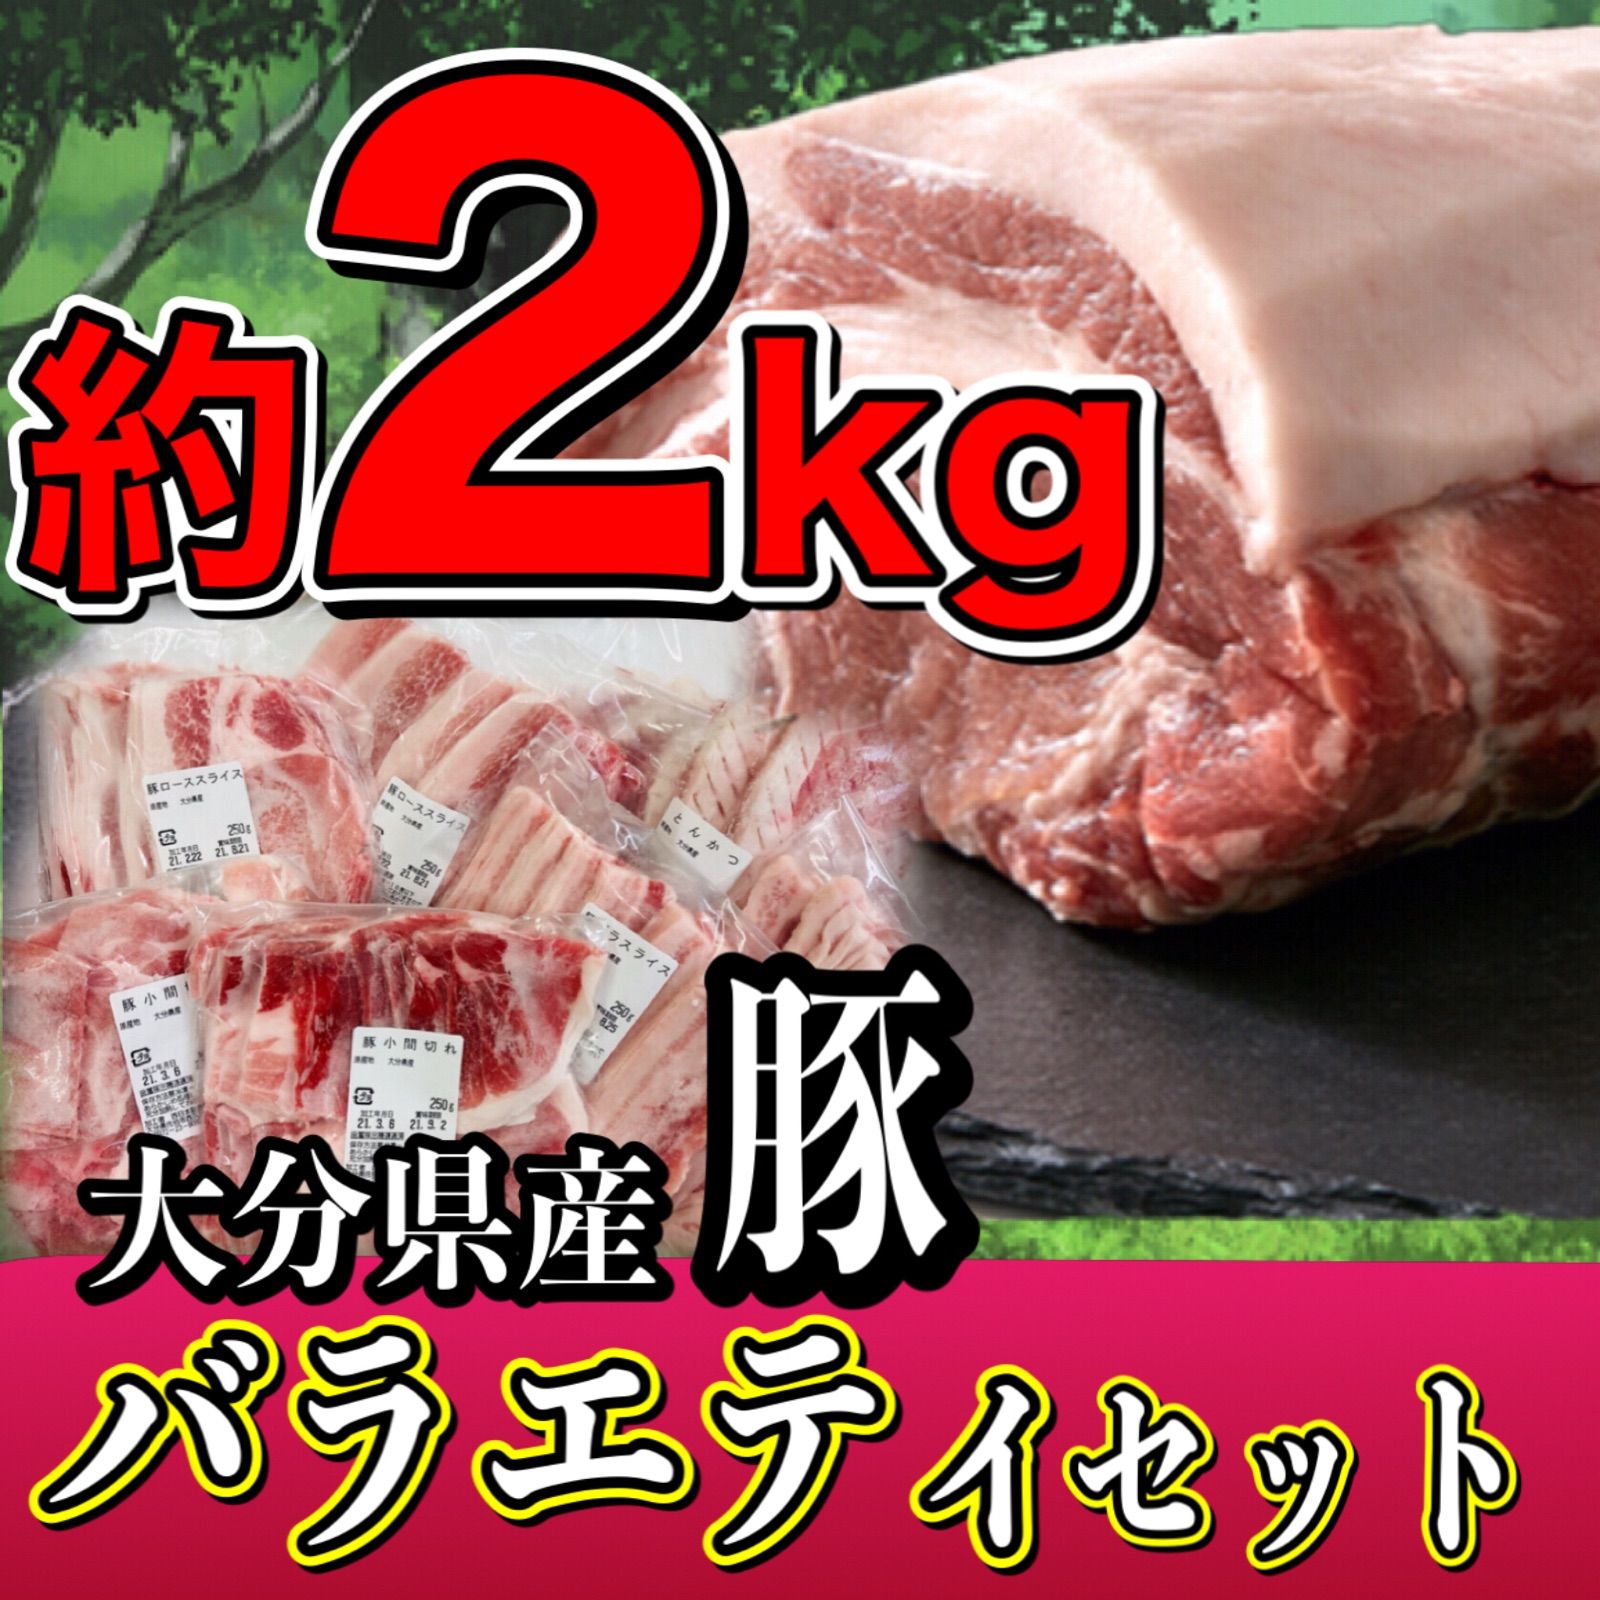 【★5評価】国産 豚肉のバラエティーパック❣️訳あり❣️総重量2kg🐷-3